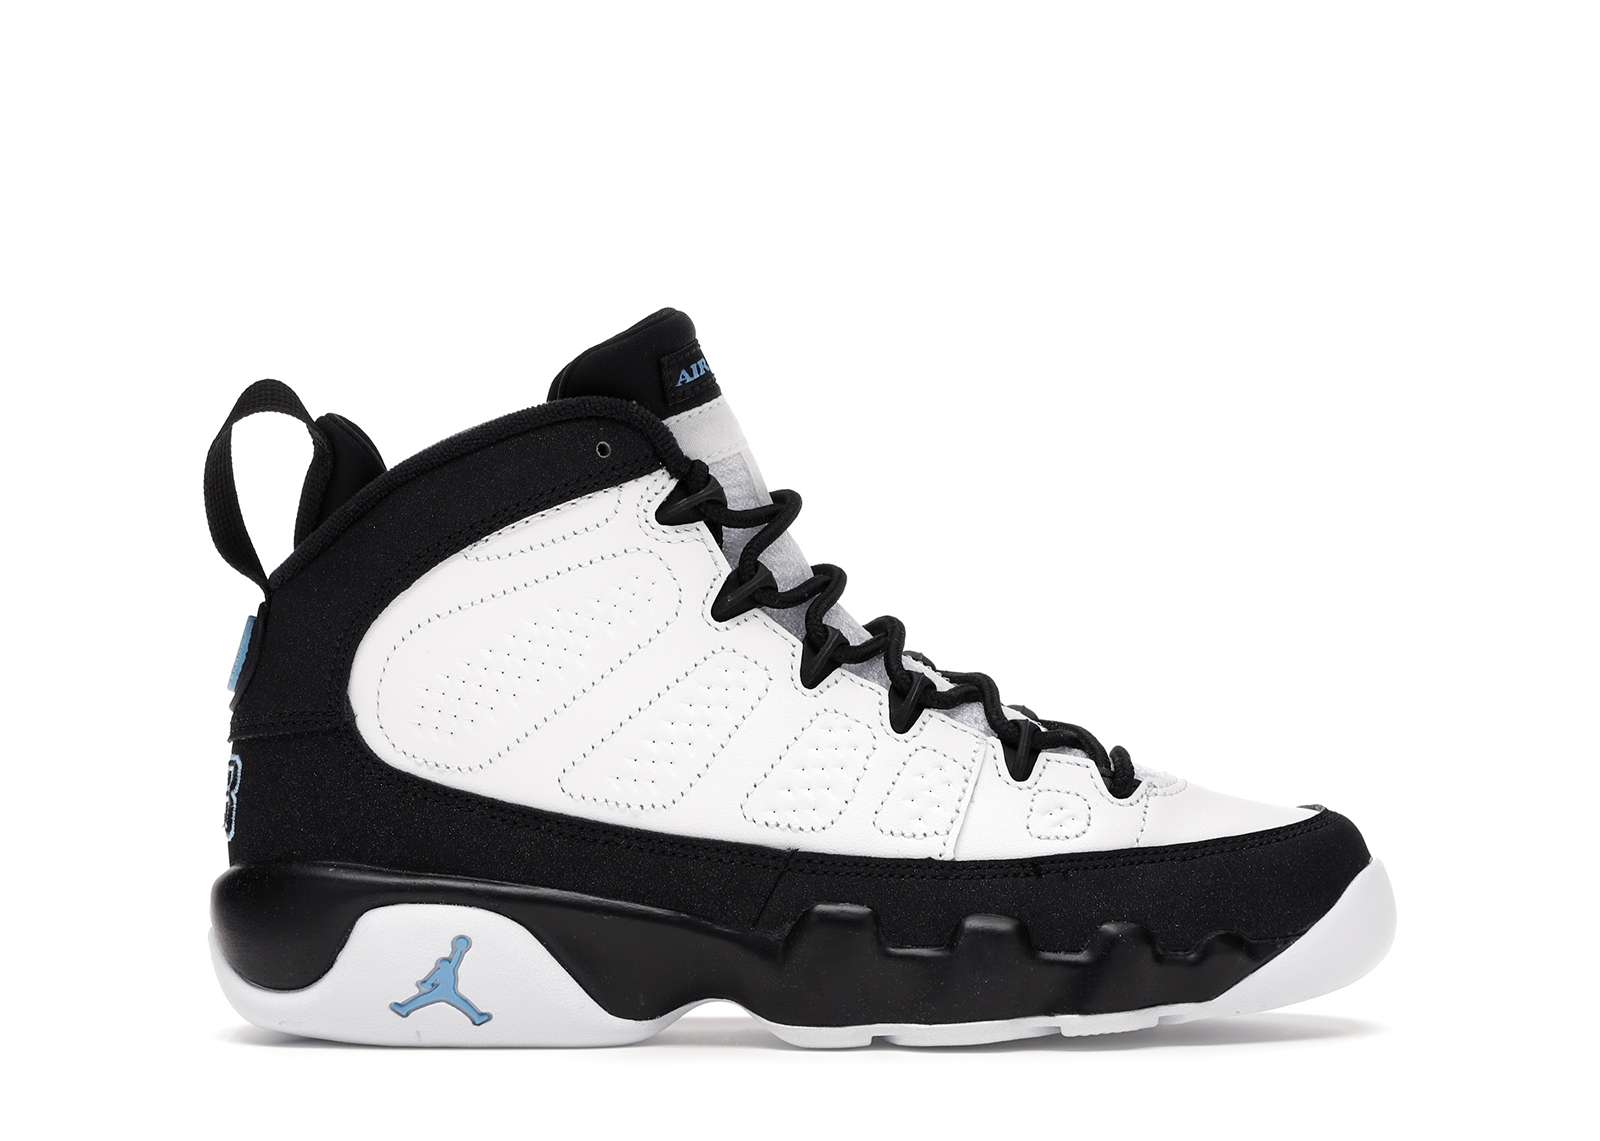 Buy Air Jordan 9 Shoes & New Sneakers - StockX